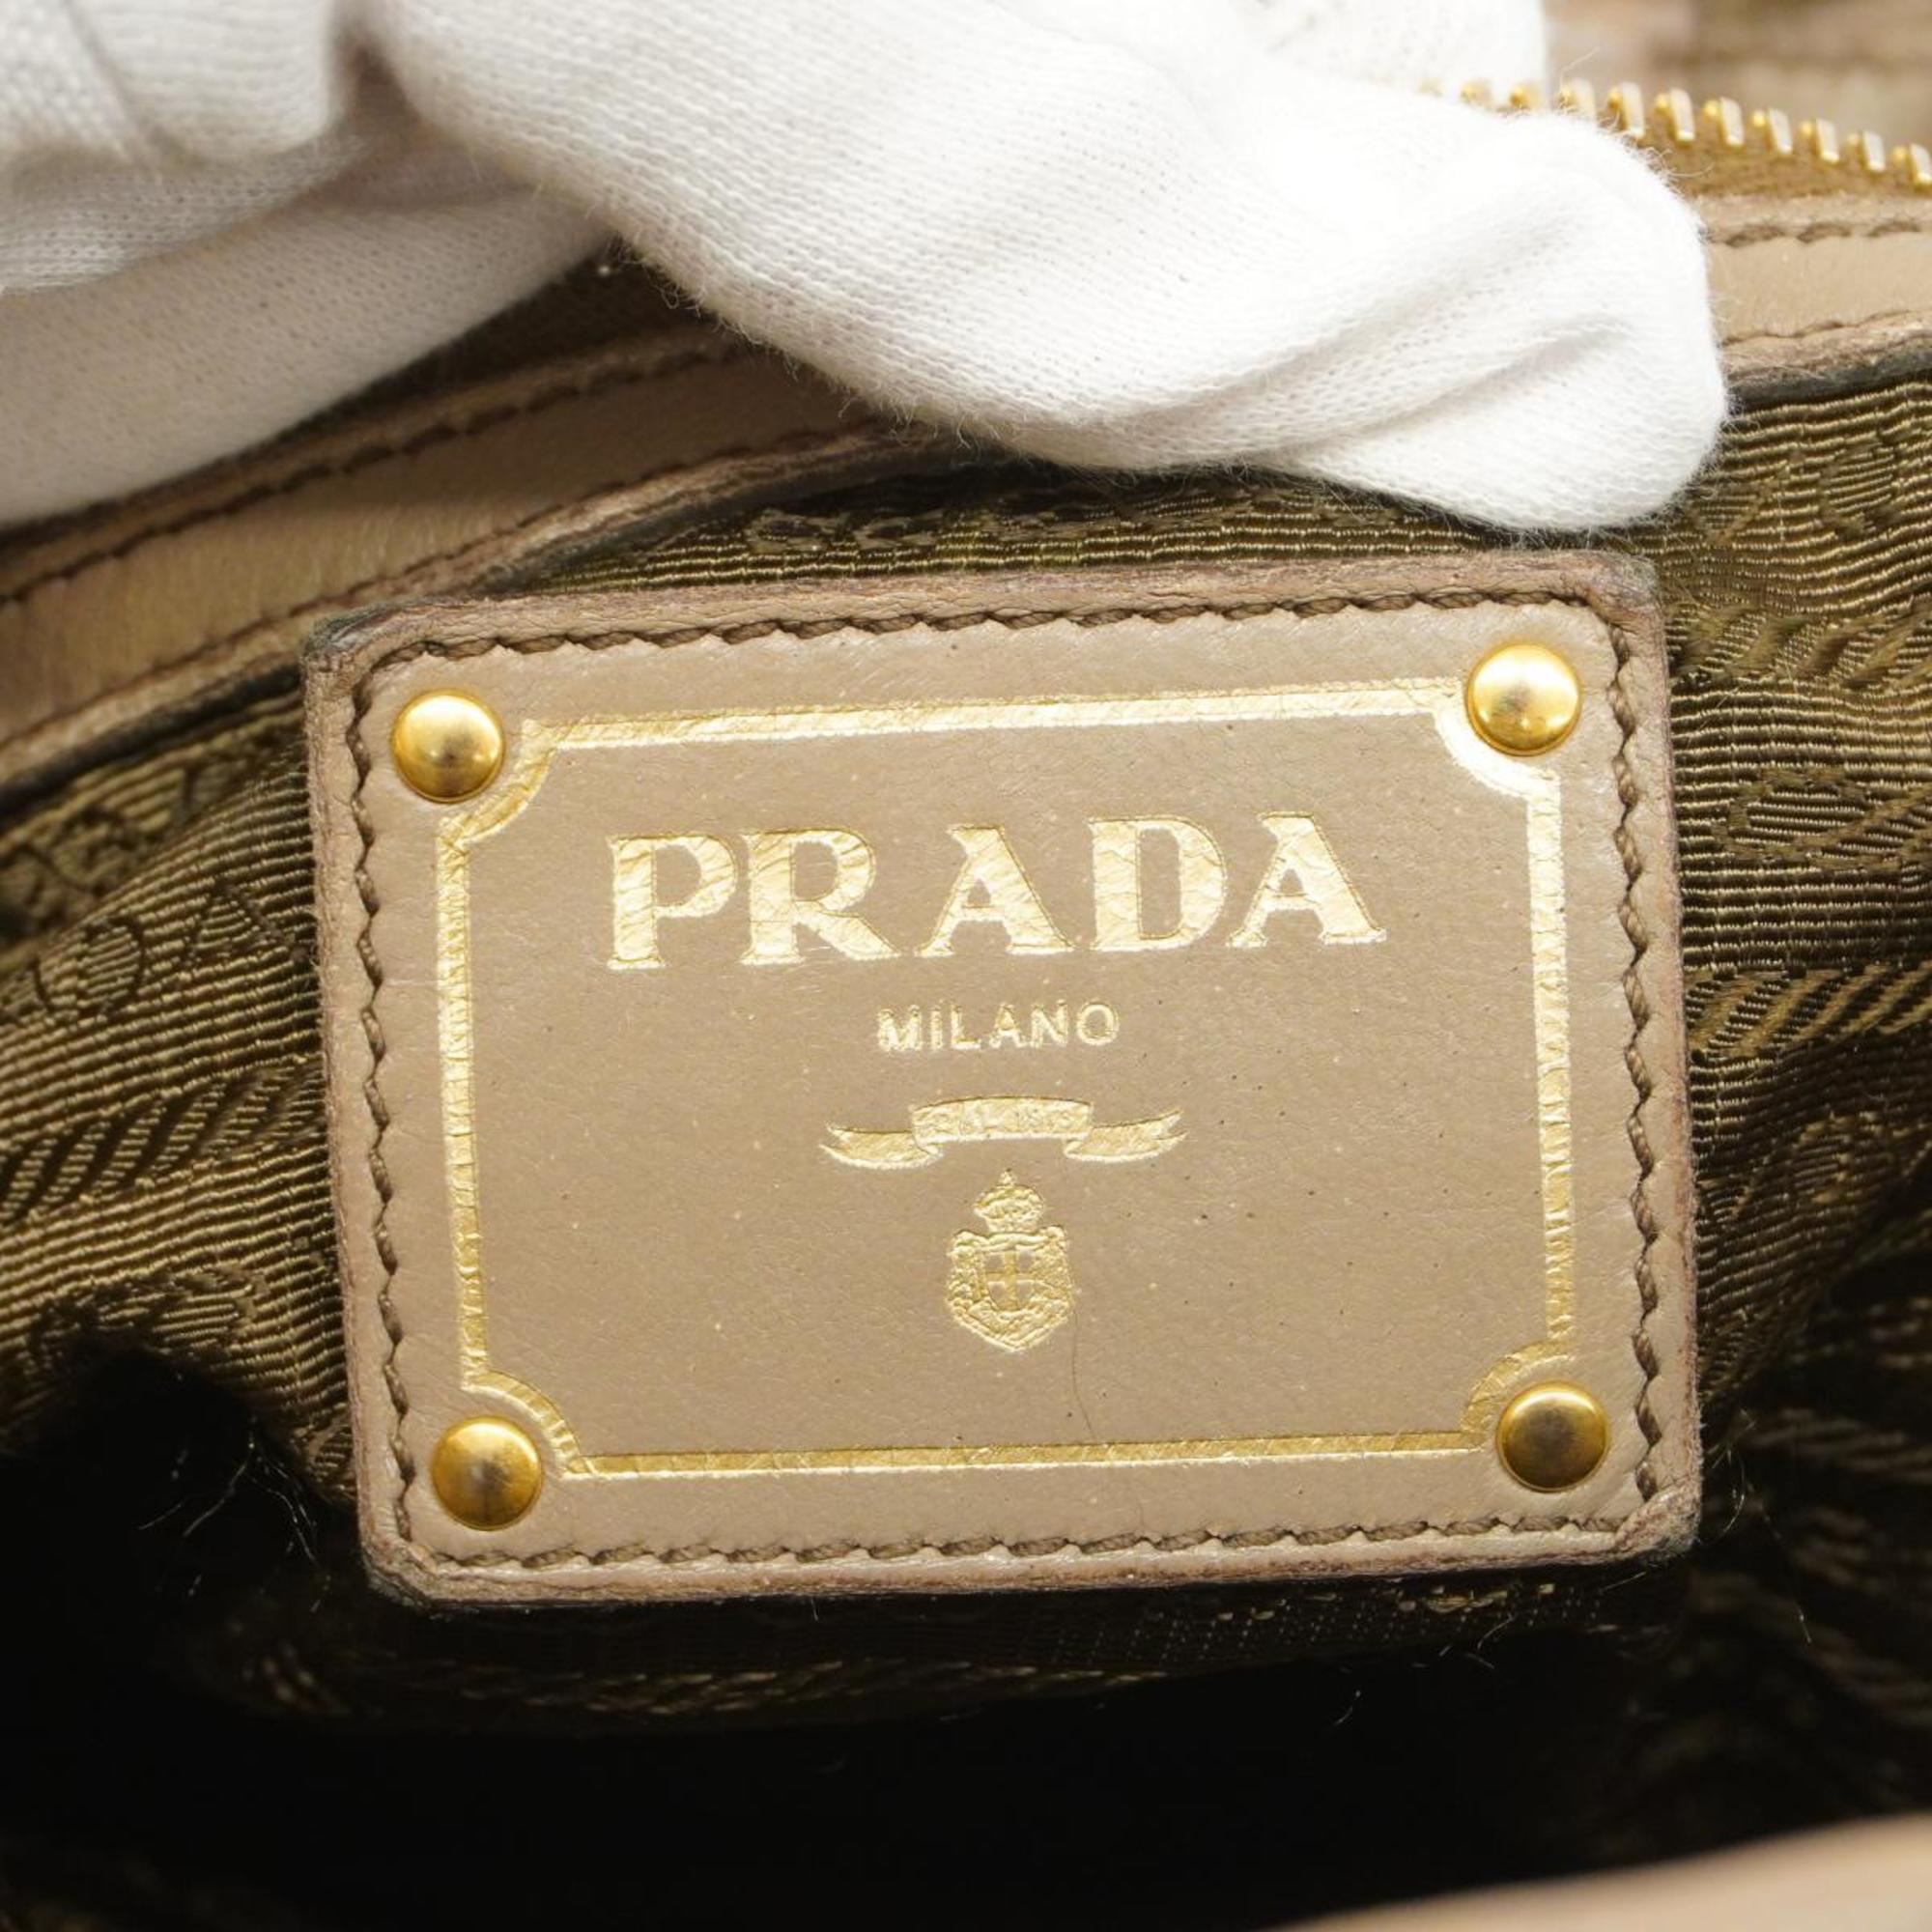 Prada handbag leather beige ladies